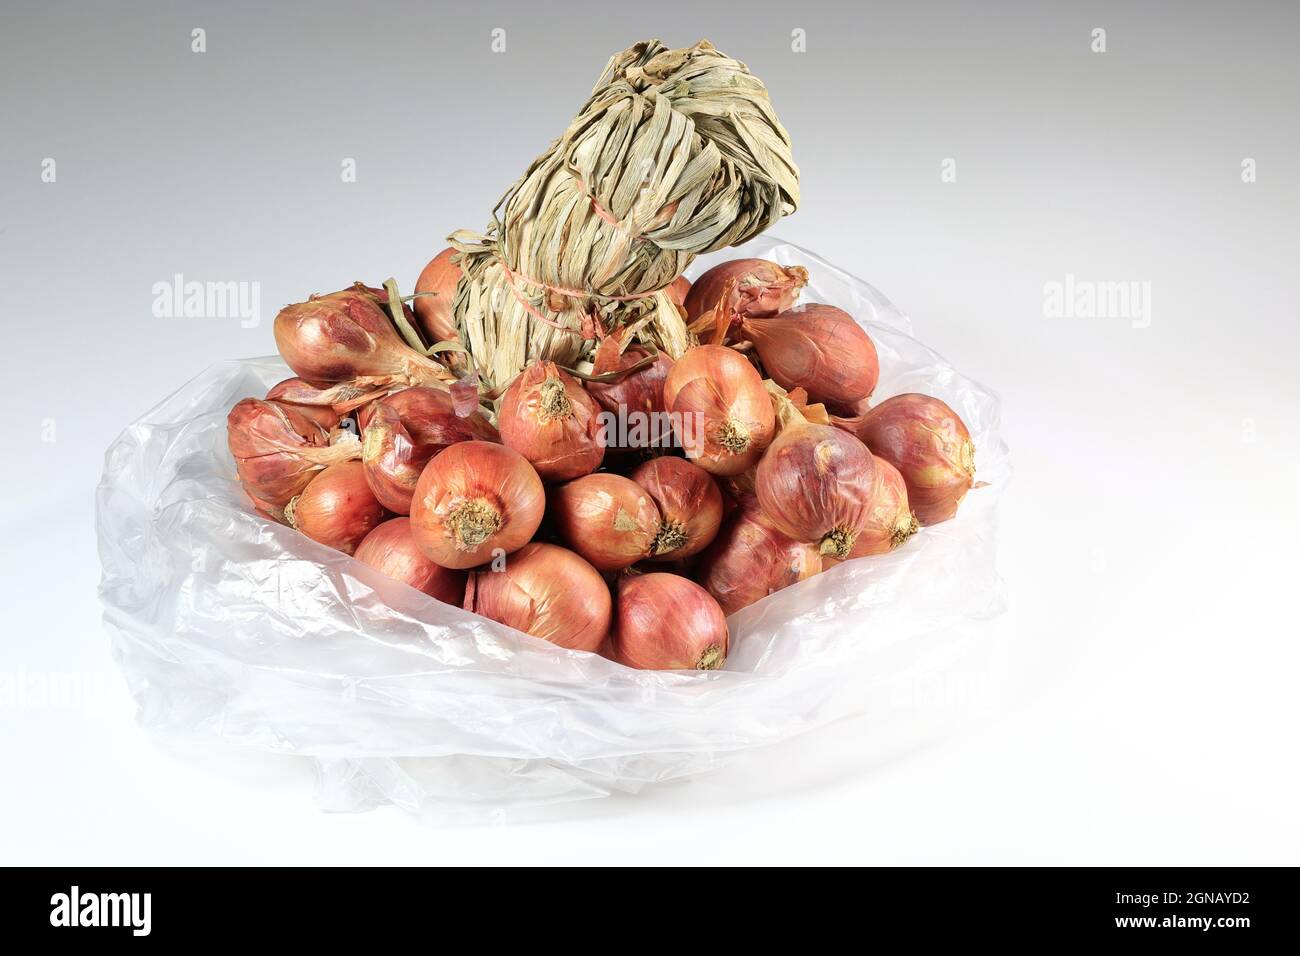 Gros plan sur un bouquet d'oignons échalotes rouges dans un sac en plastique blanc, oignons échalotes dans un groupe isolé sur fond blanc, épices cuisant l'échalote frais, Banque D'Images